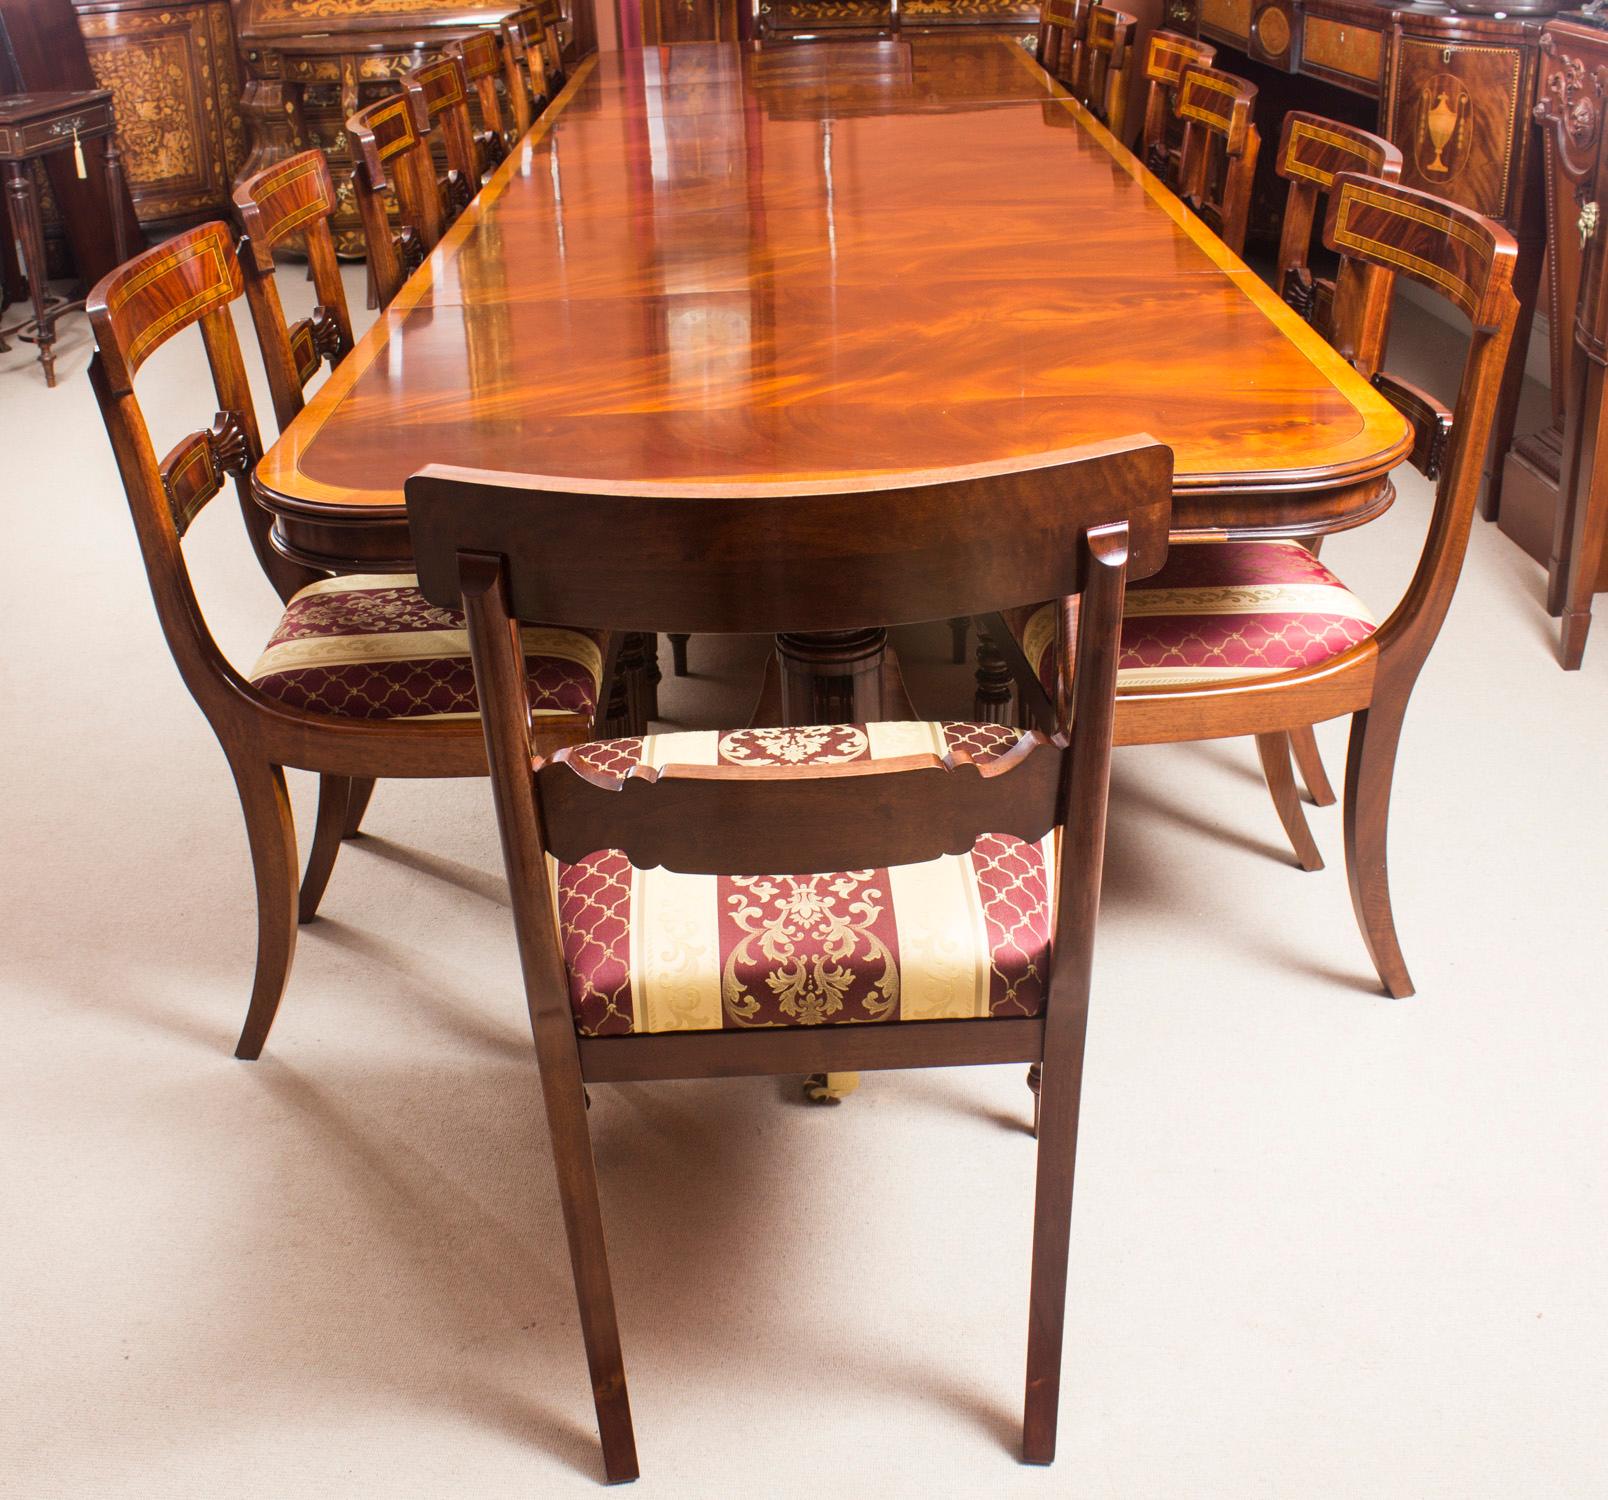 Dies ist eine hervorragende Vintage Regency Revival Esstischgarnitur in Flamme Mahagoni gefertigt und mit prächtigen Satinholz crossbanded Dekoration auf dem Tisch und Stühlen. aus dem  zweiten Hälfte des 20. Jahrhunderts.

Es besteht aus einem